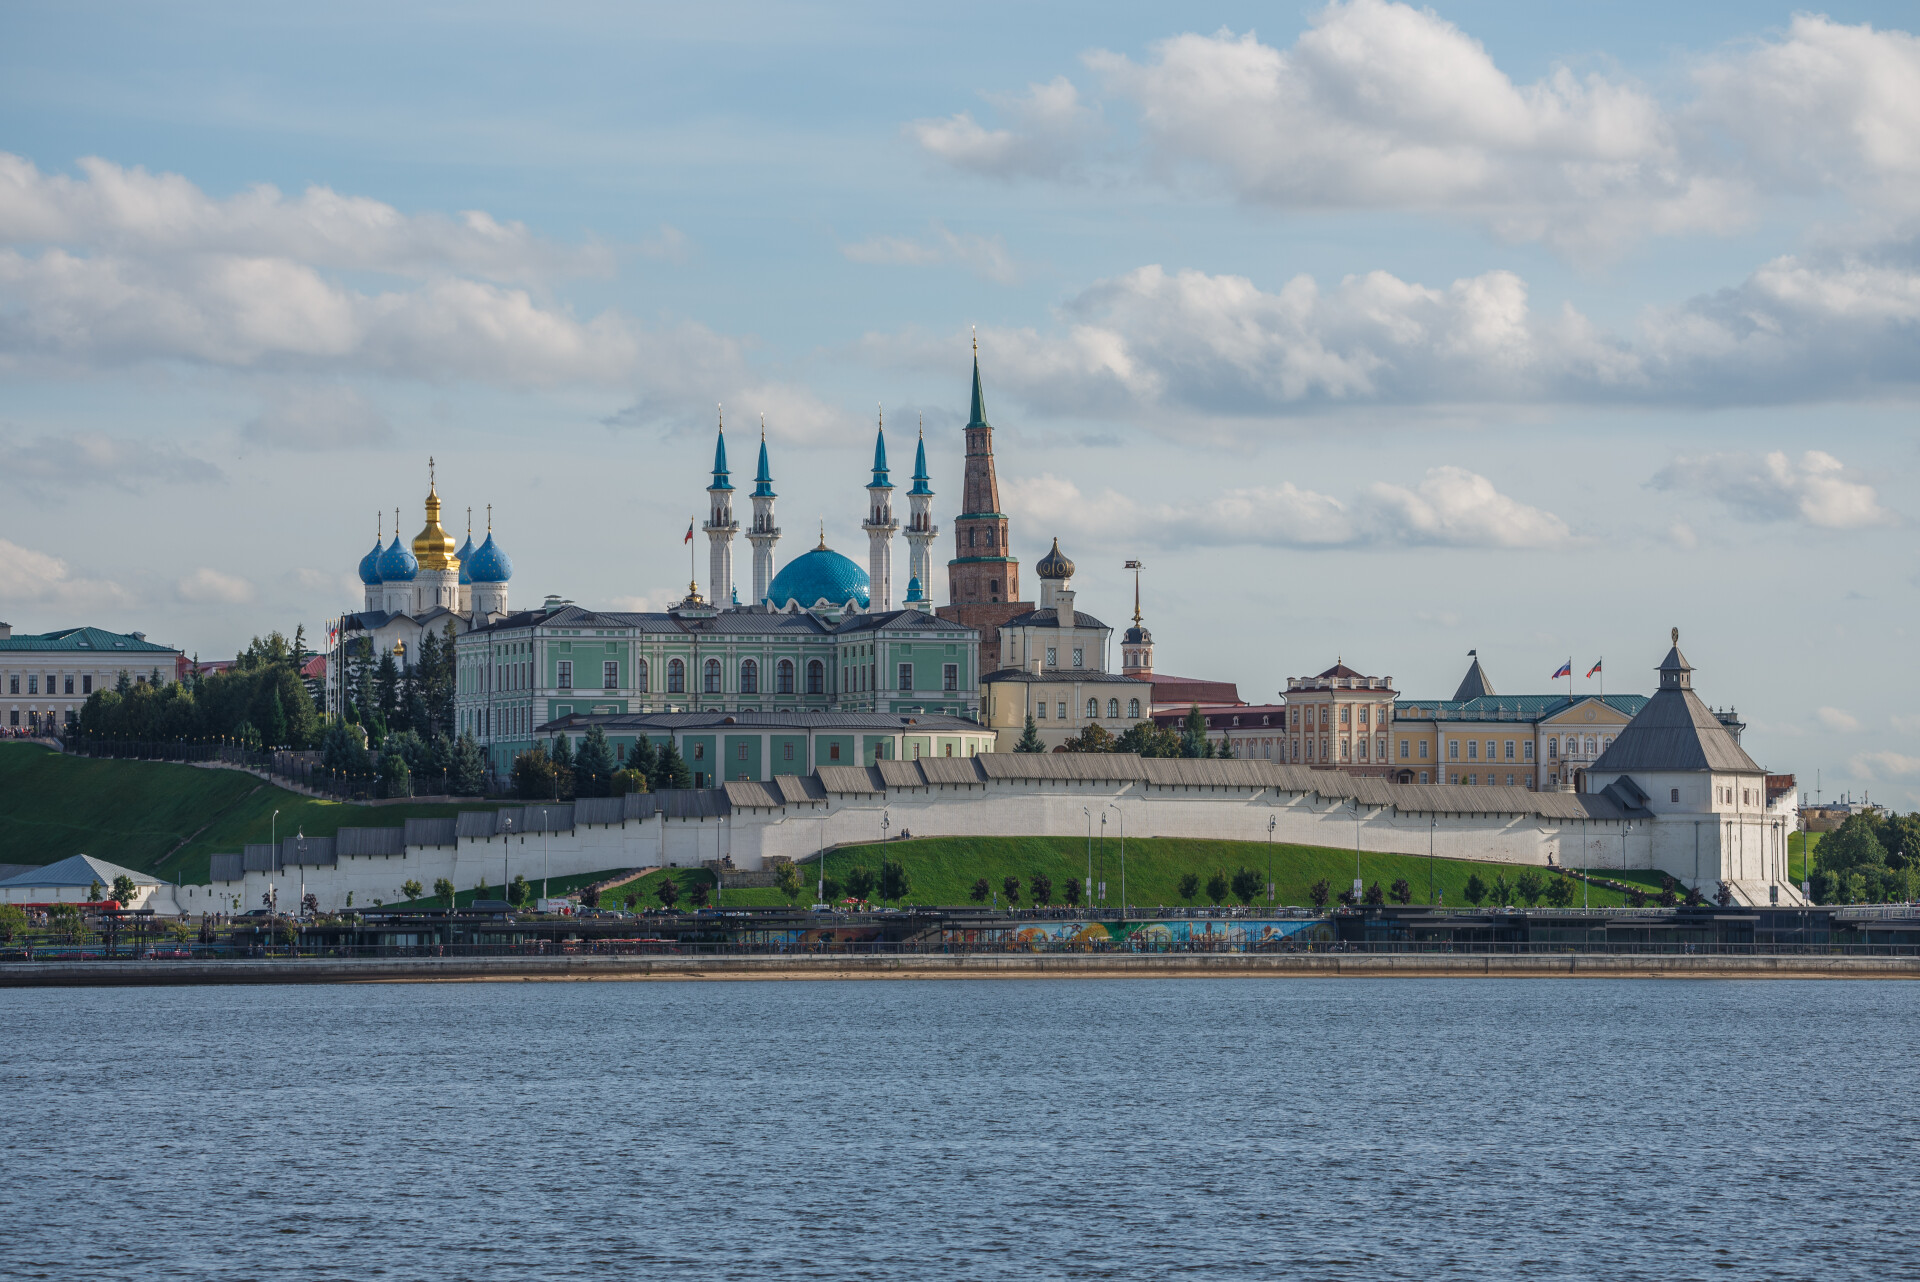 Татарстан вошел в топ регионов-лидеров по объему закупок у МСБ